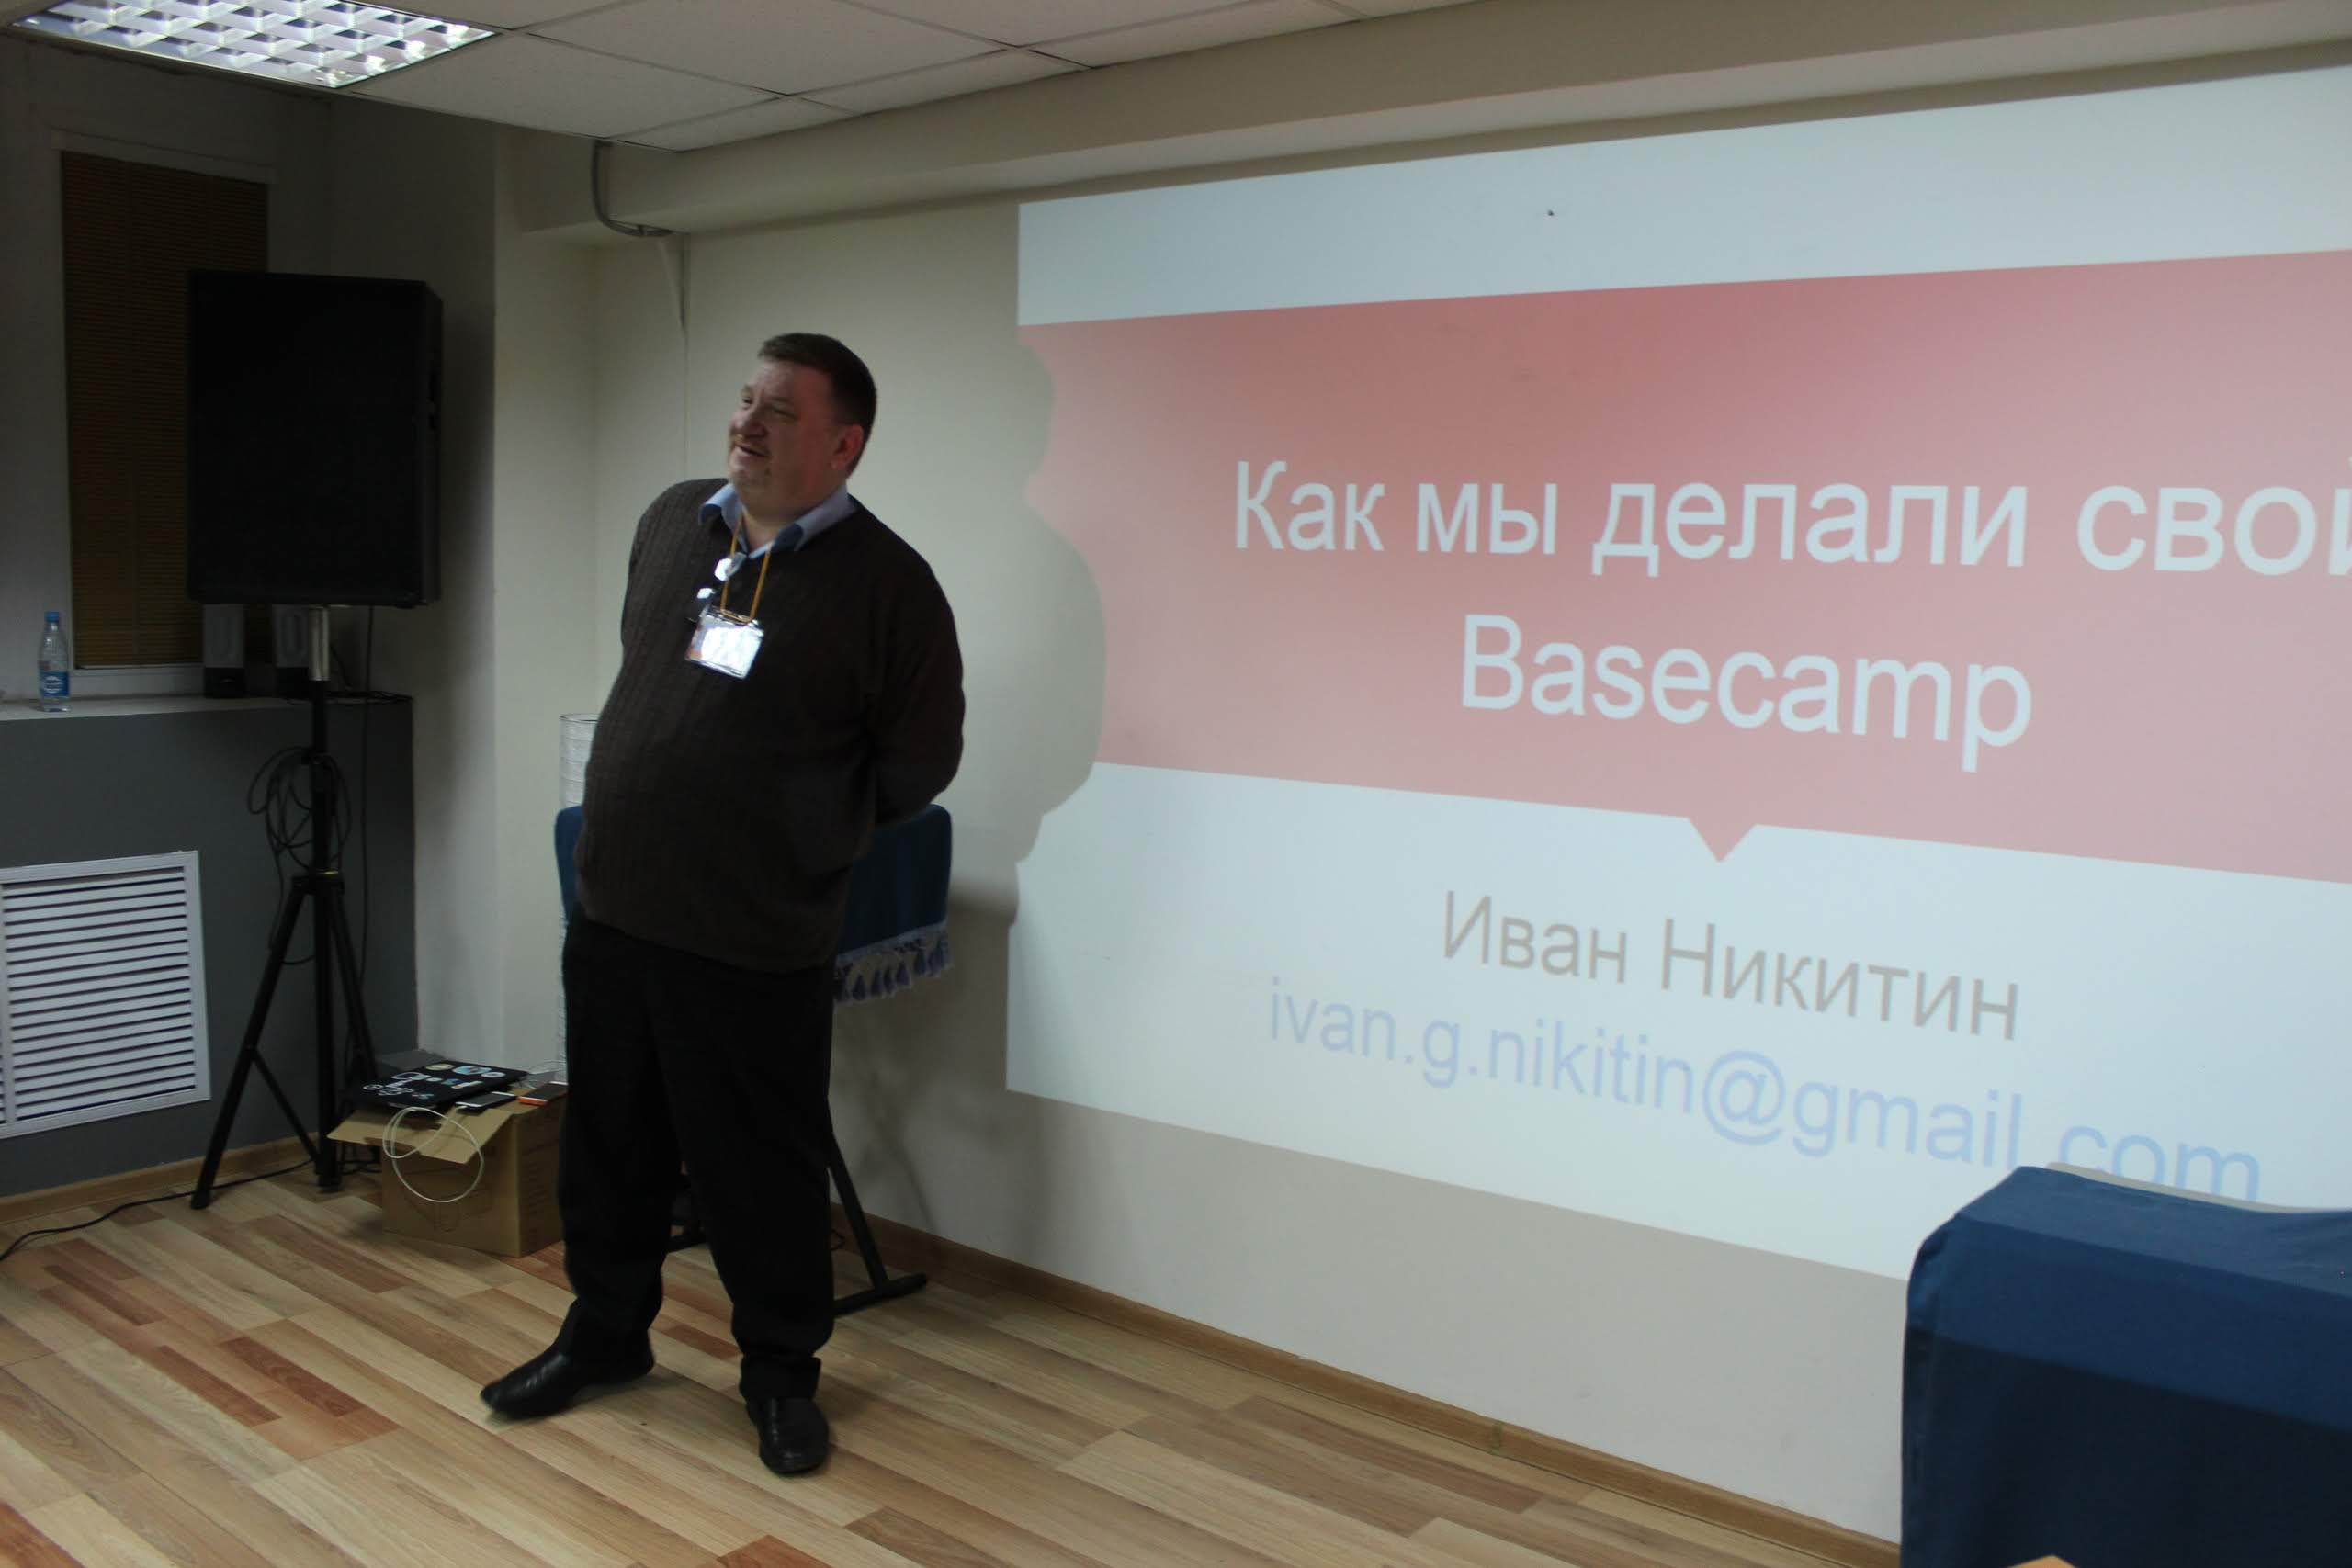 Иван Никитин: «Рассказ о том, как мы делали систему управления проектами». Meetup WordPress Moscow 2019г.